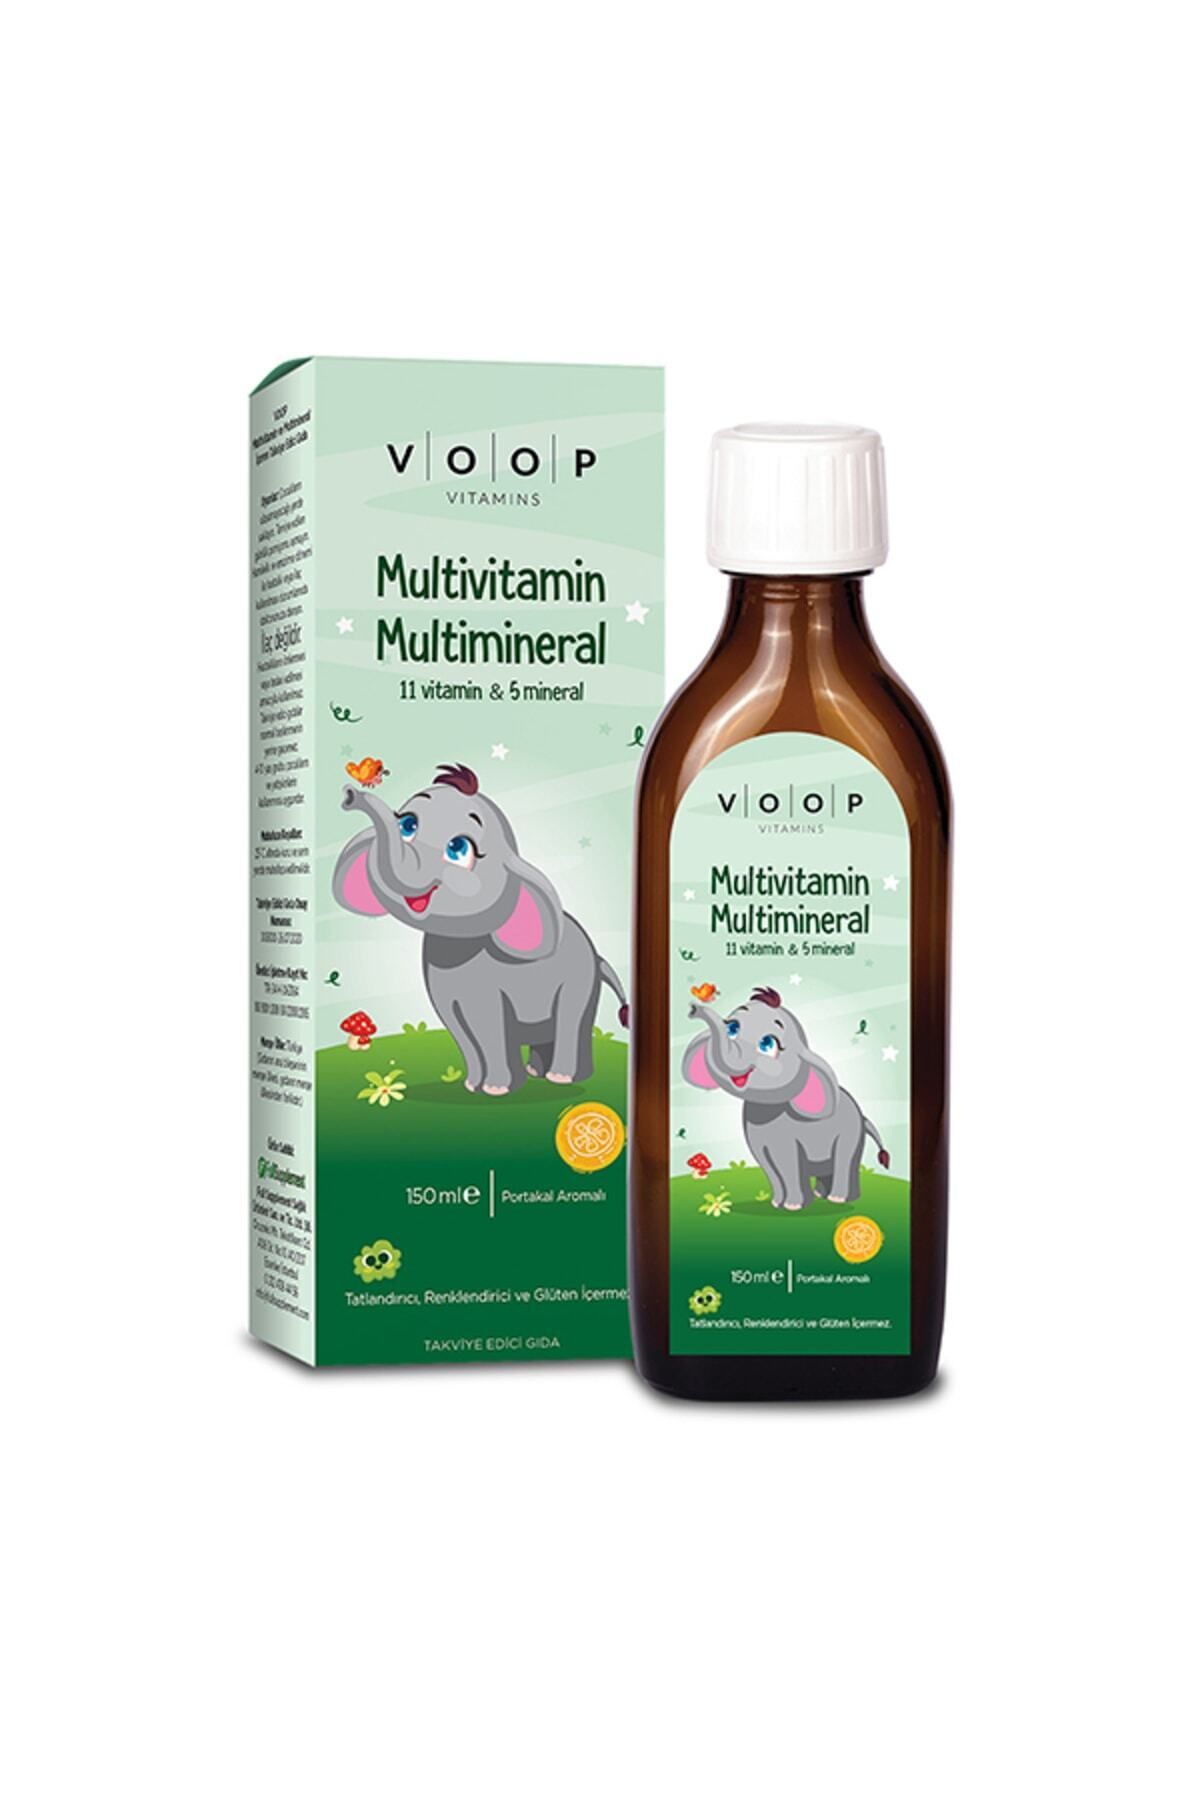 VOOP Multivitamin Multimineral Portakal Aromalı Şurup - 150 ml (11 VİTAMİN & 5 MİNERAL)